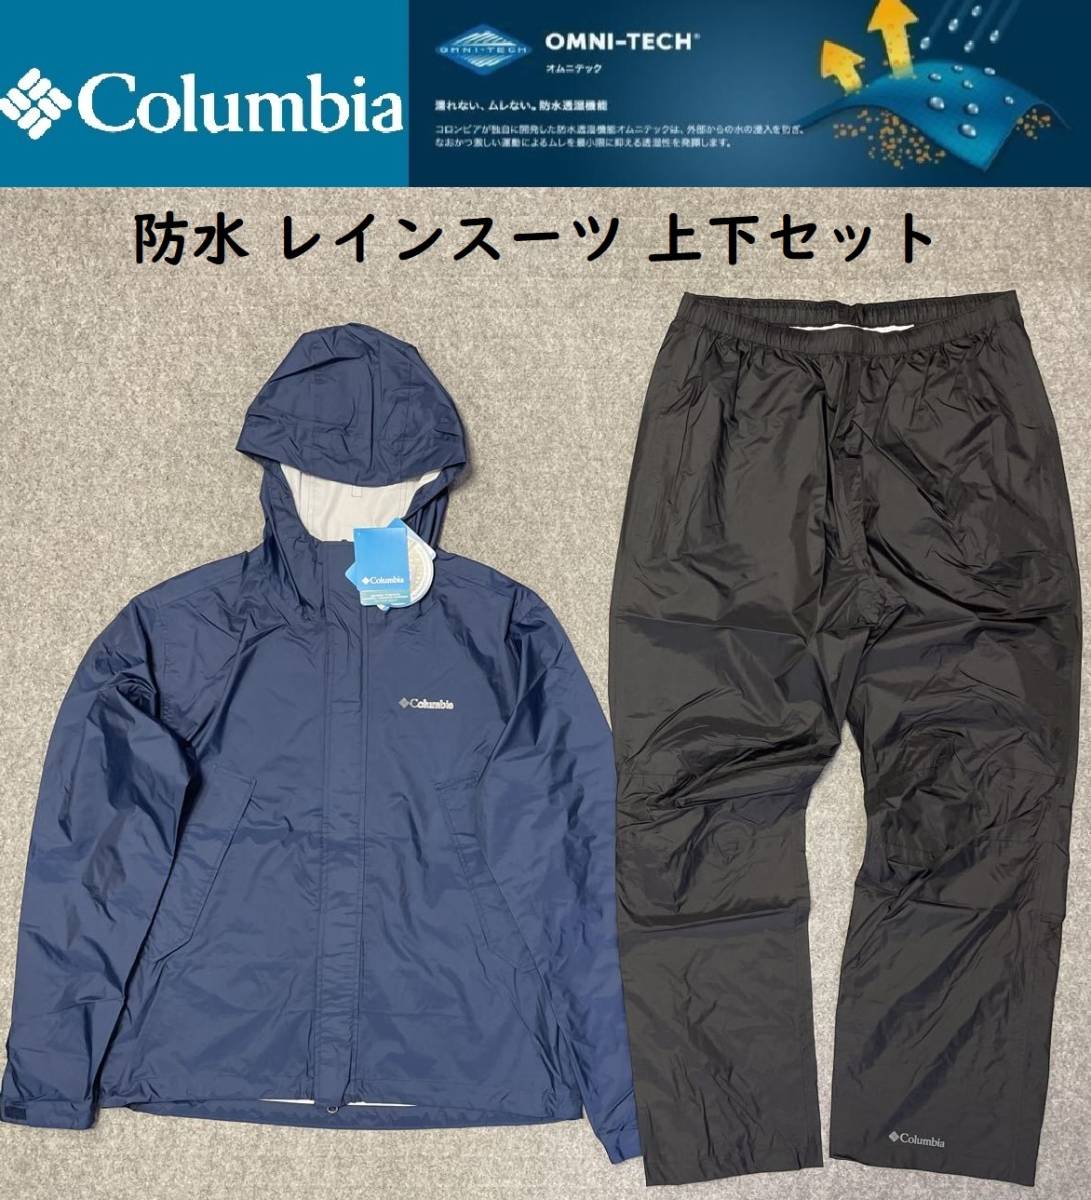 メンズ Mサイズ ☆送料無料☆ Columbia コロンビア 防水 レインスーツ 